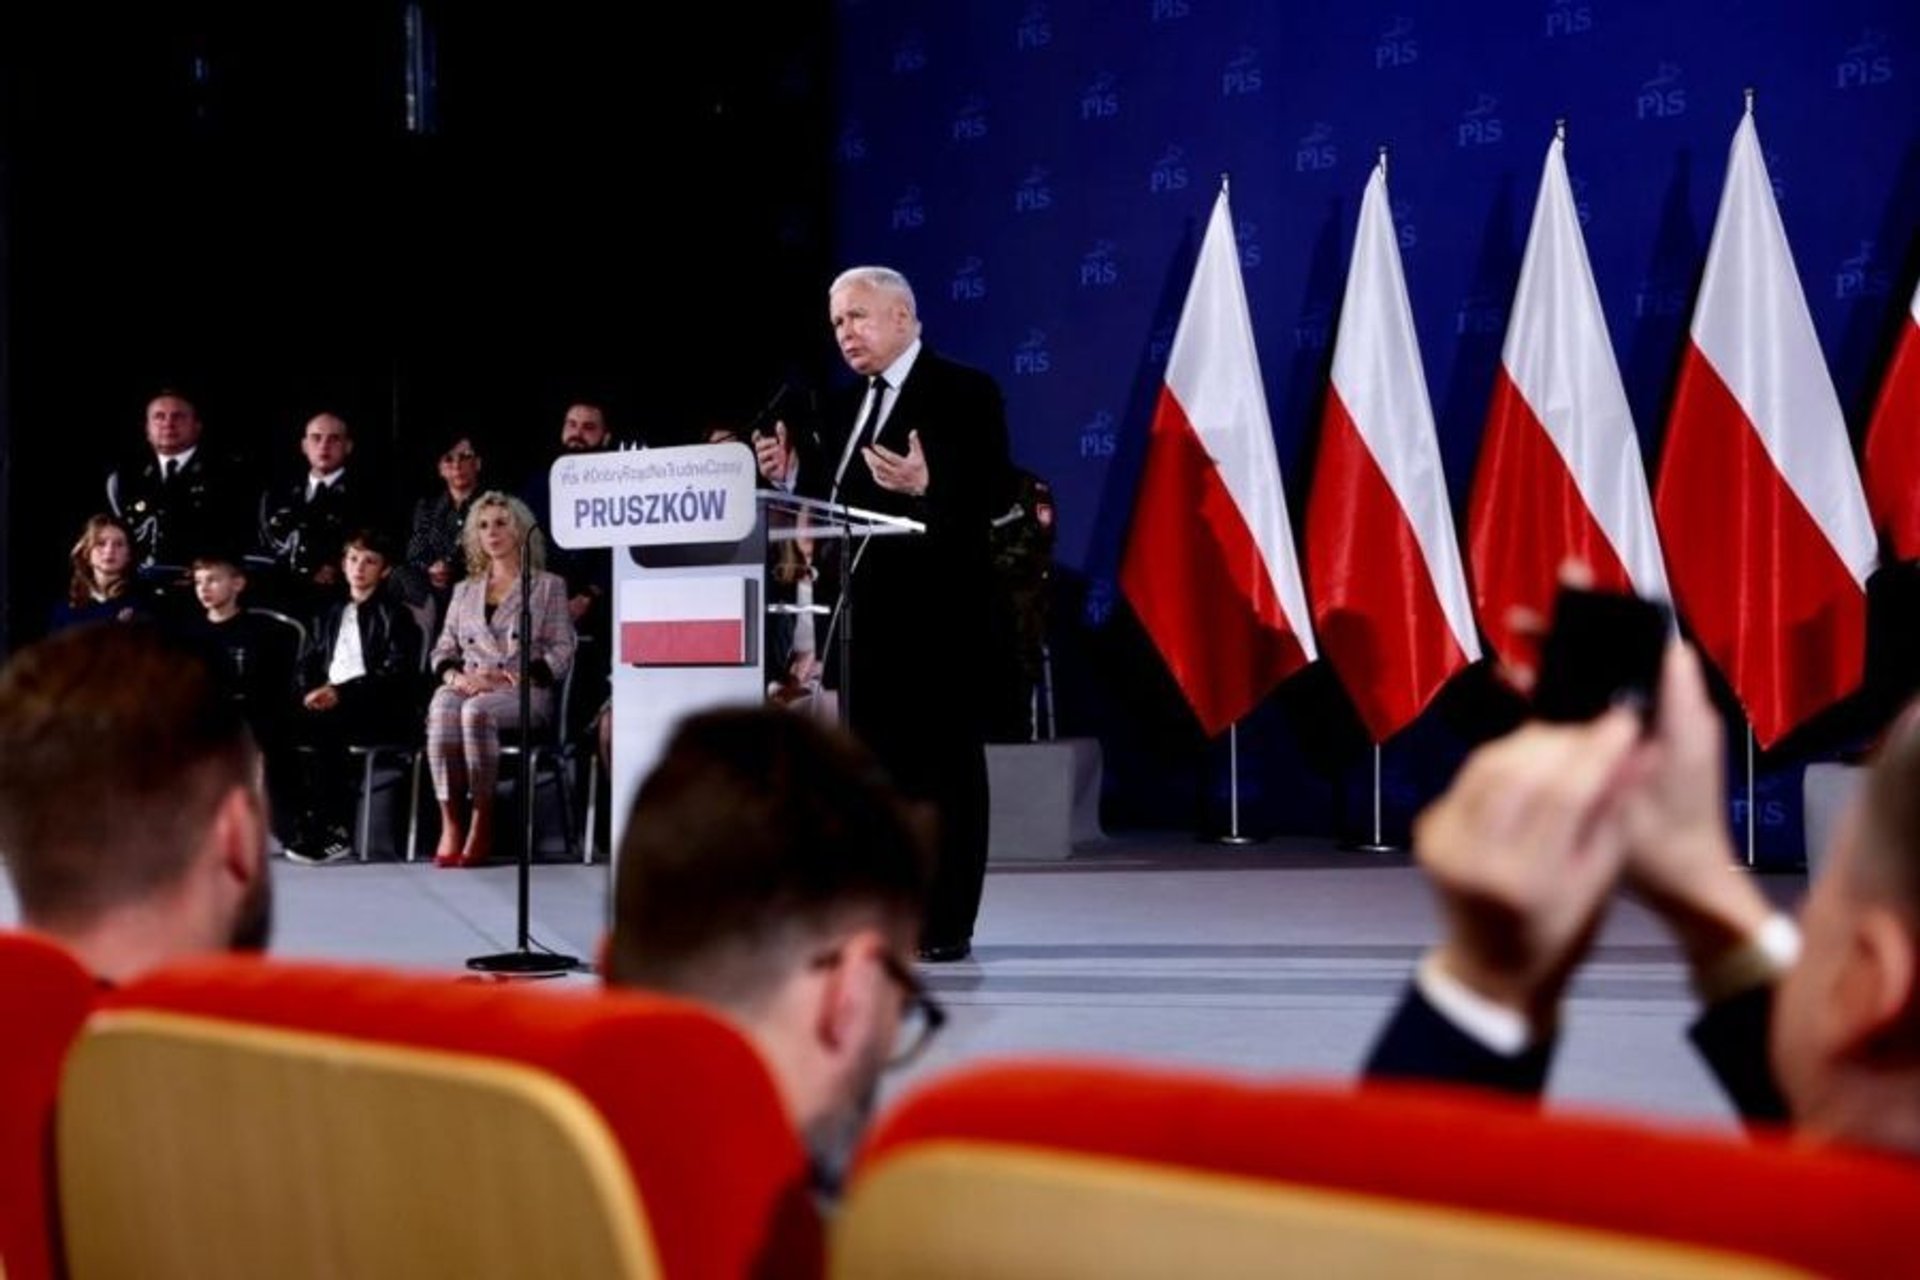 Skandal podczas wizyty Jarosława Kaczyńskiego w Pruszkowie. Na salę nie wpuszczono mieszkańców miasta